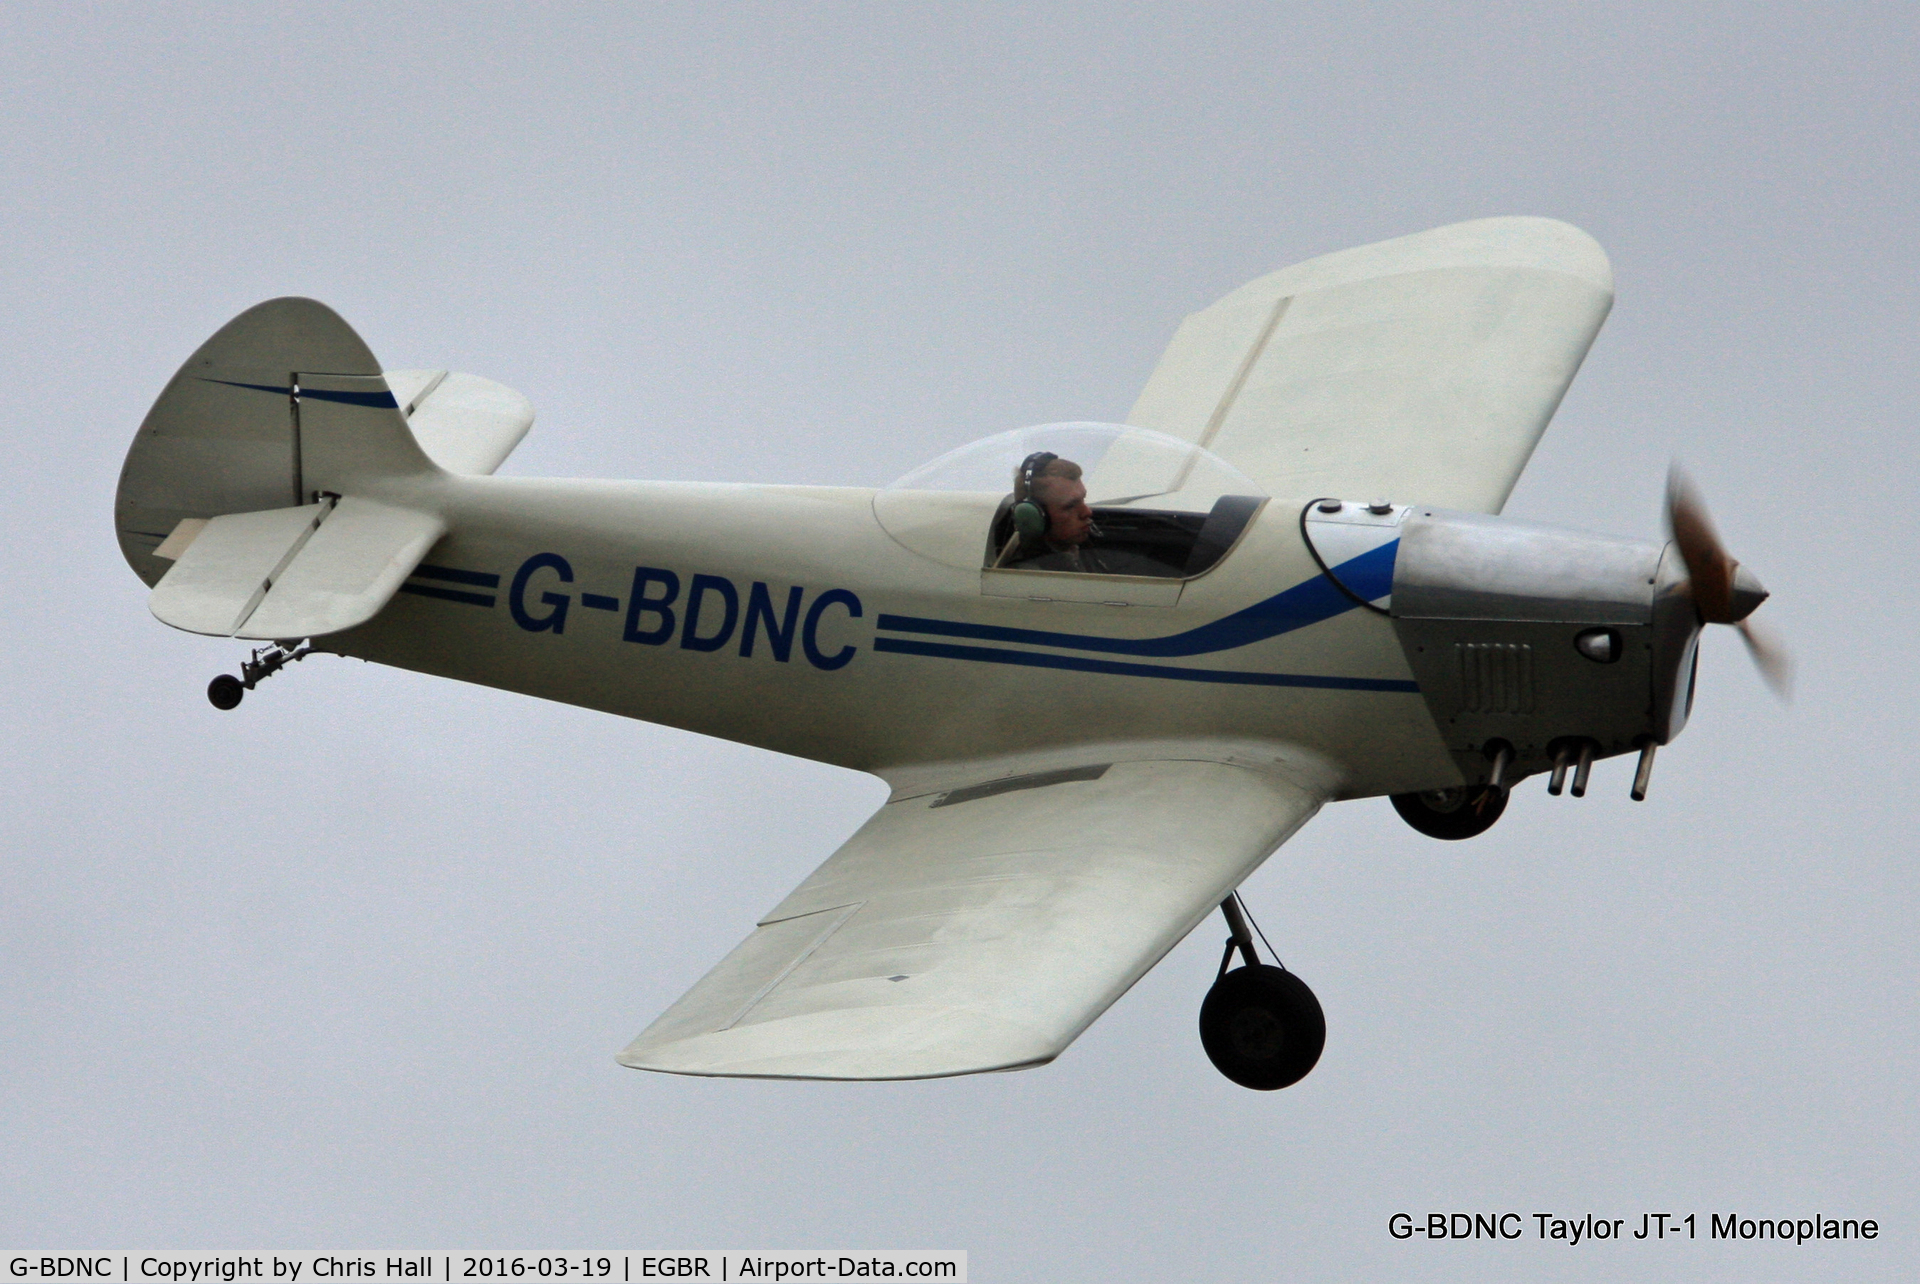 G-BDNC, 1984 Taylor JT-1 Monoplane C/N PFA 1454, at Breighton airfield